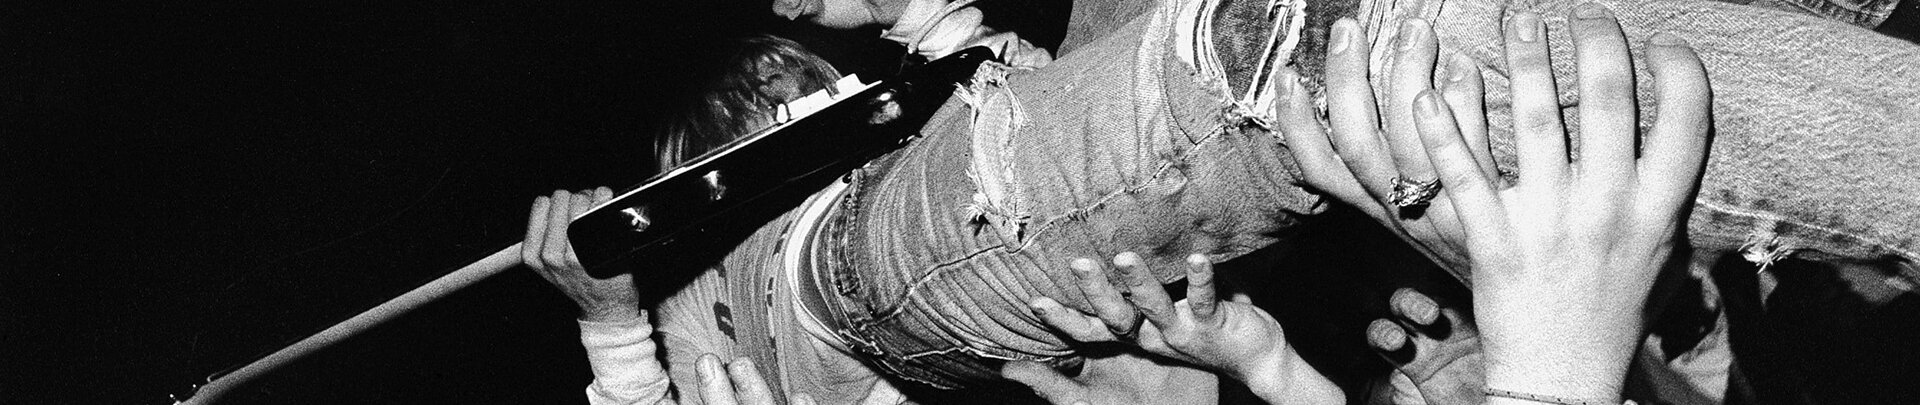 Kurt Cobain's background image'